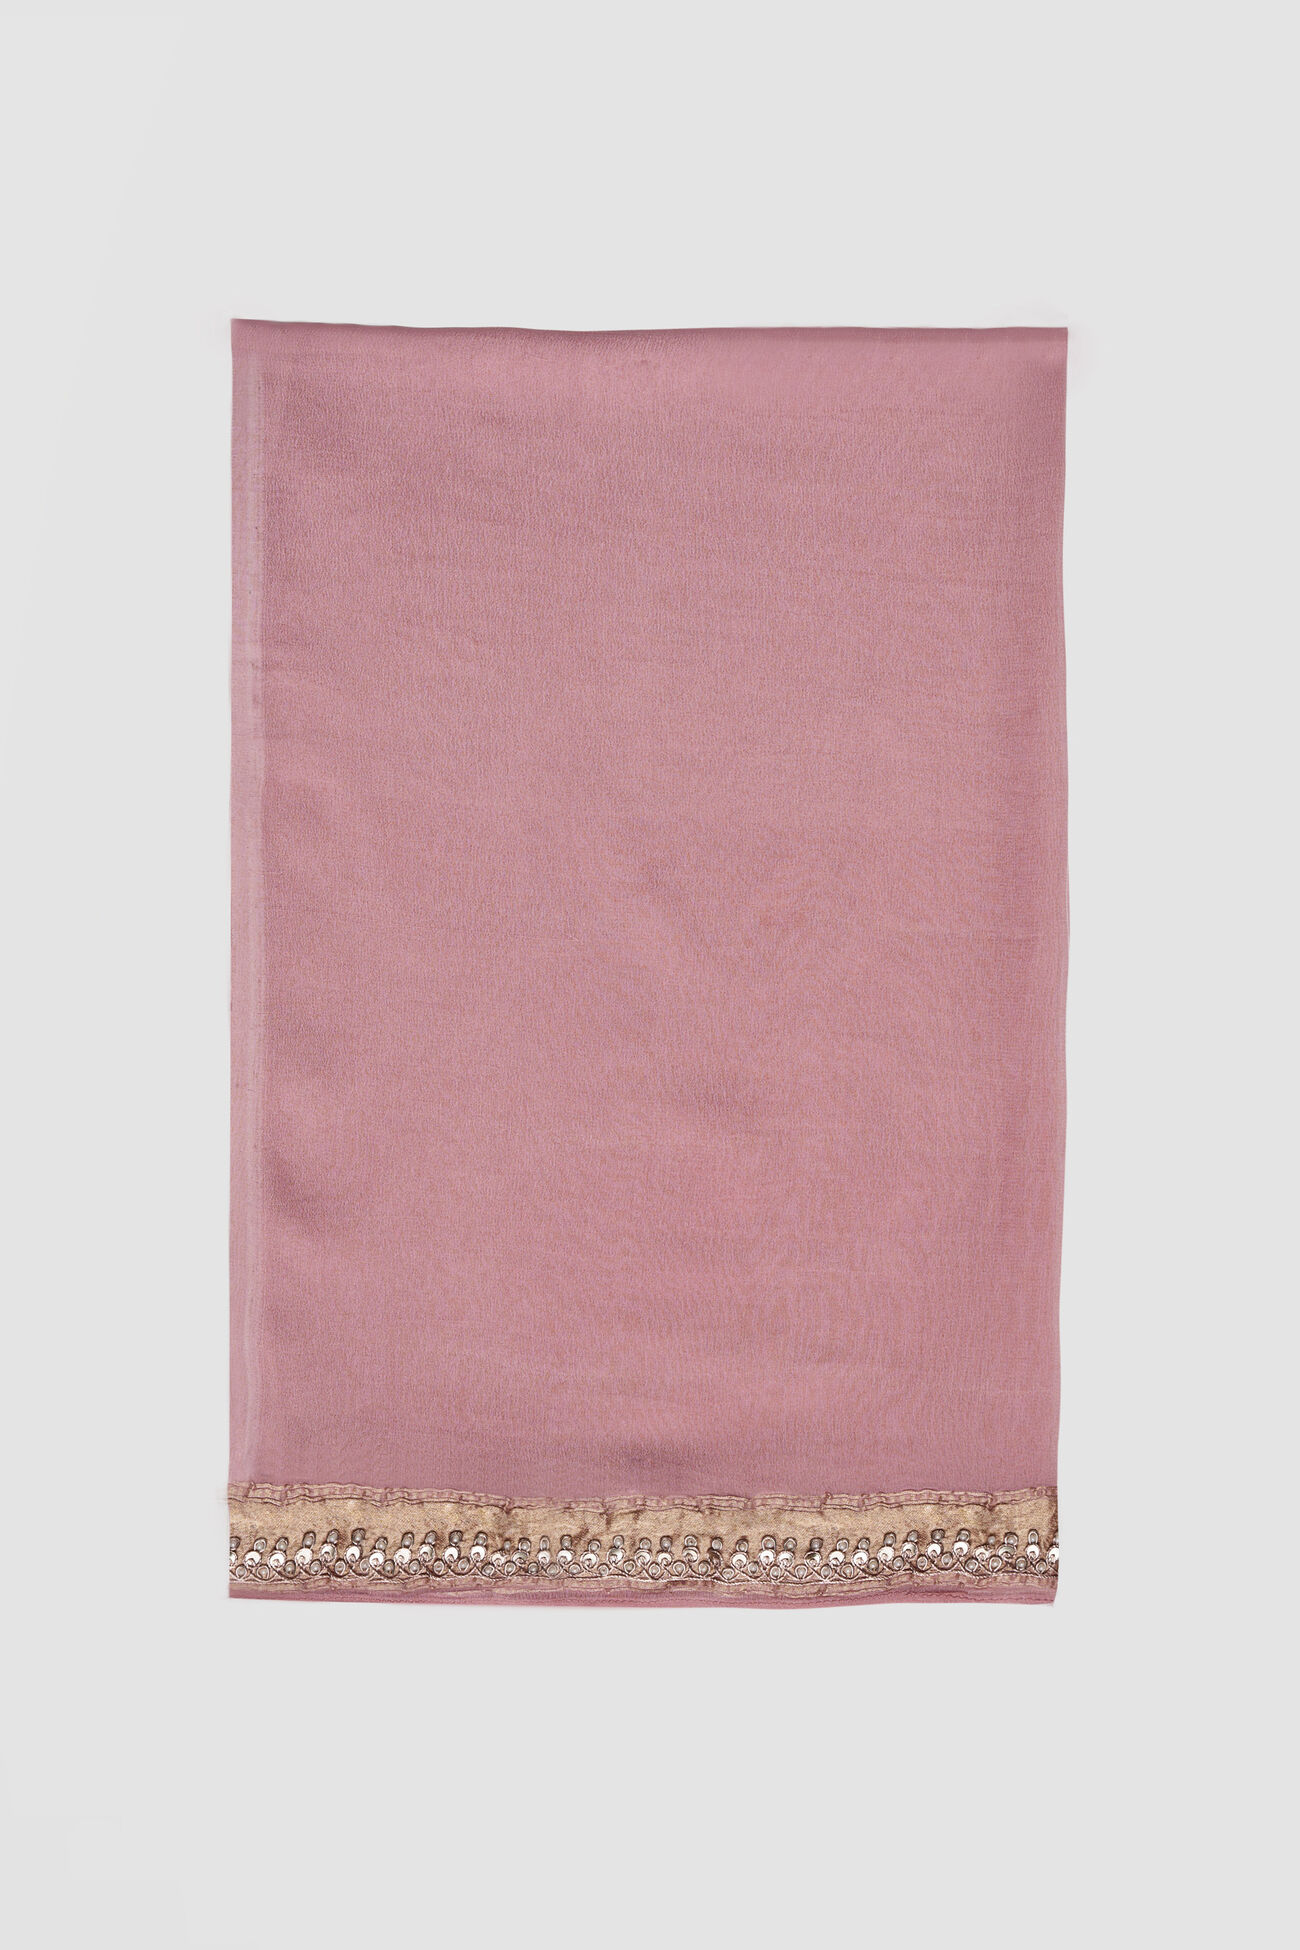 Aaradhana Benarasi Silk Embroidered Saree, Blush, image 8